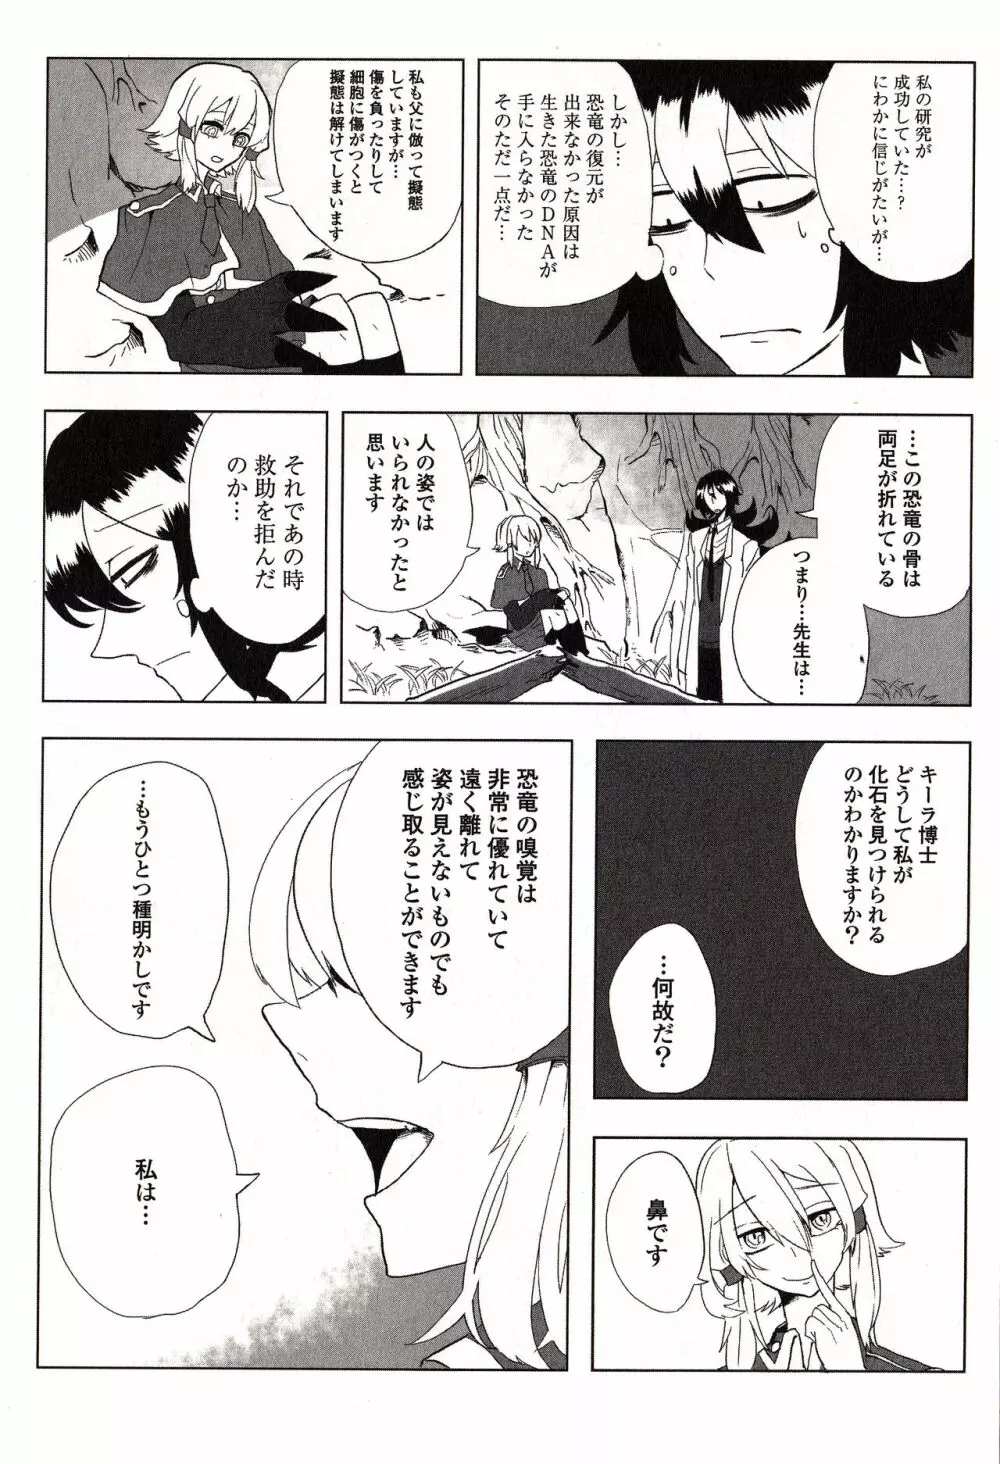 Sanzo manga 143ページ